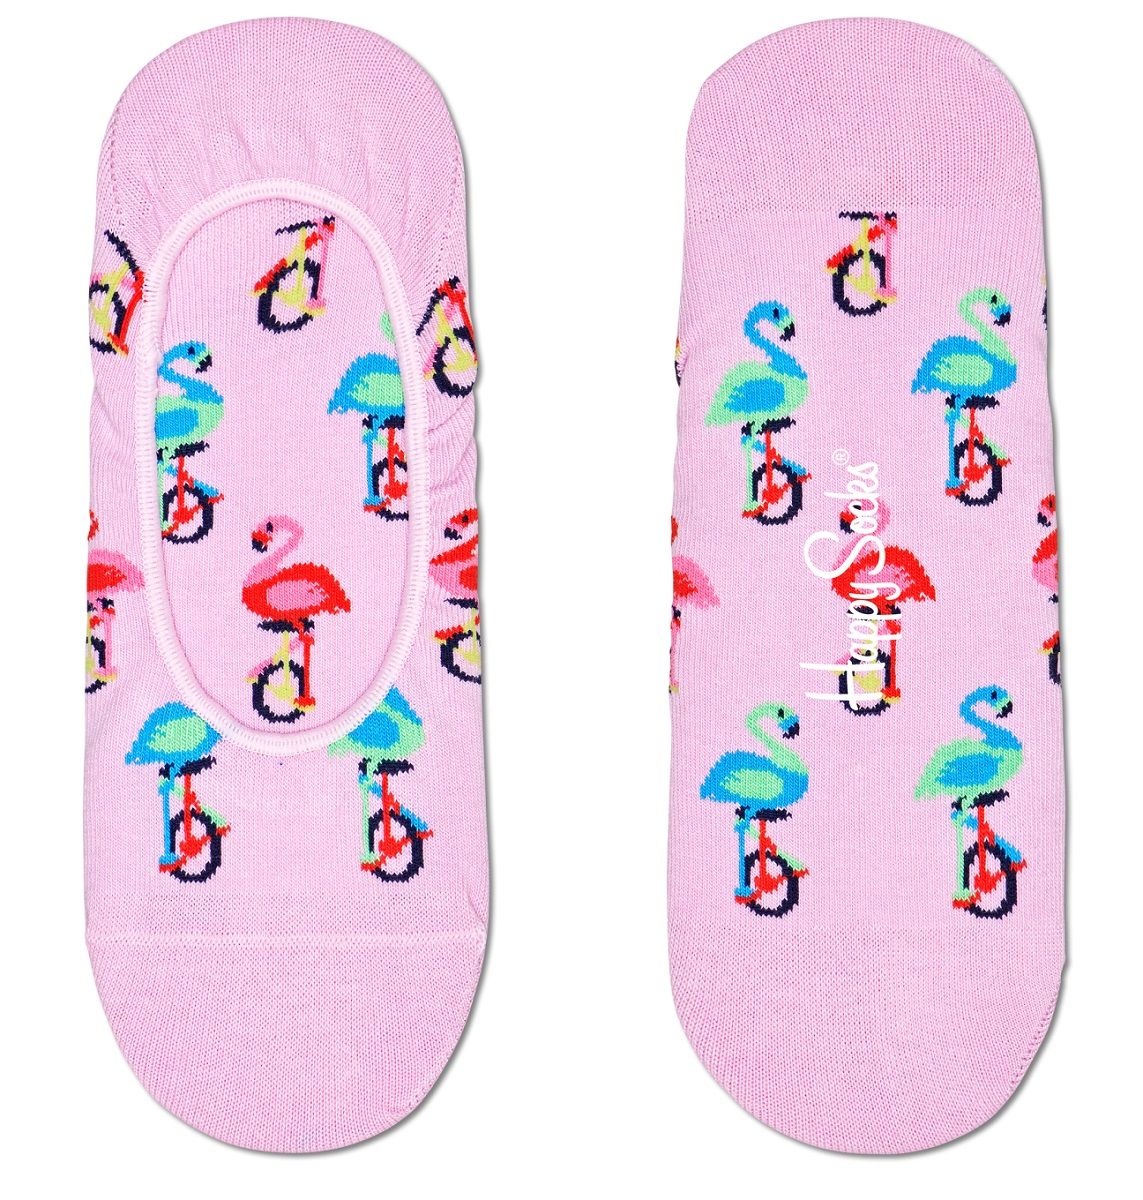 Носки-следки Flamingo Liner Sock с фламинго на колесах.